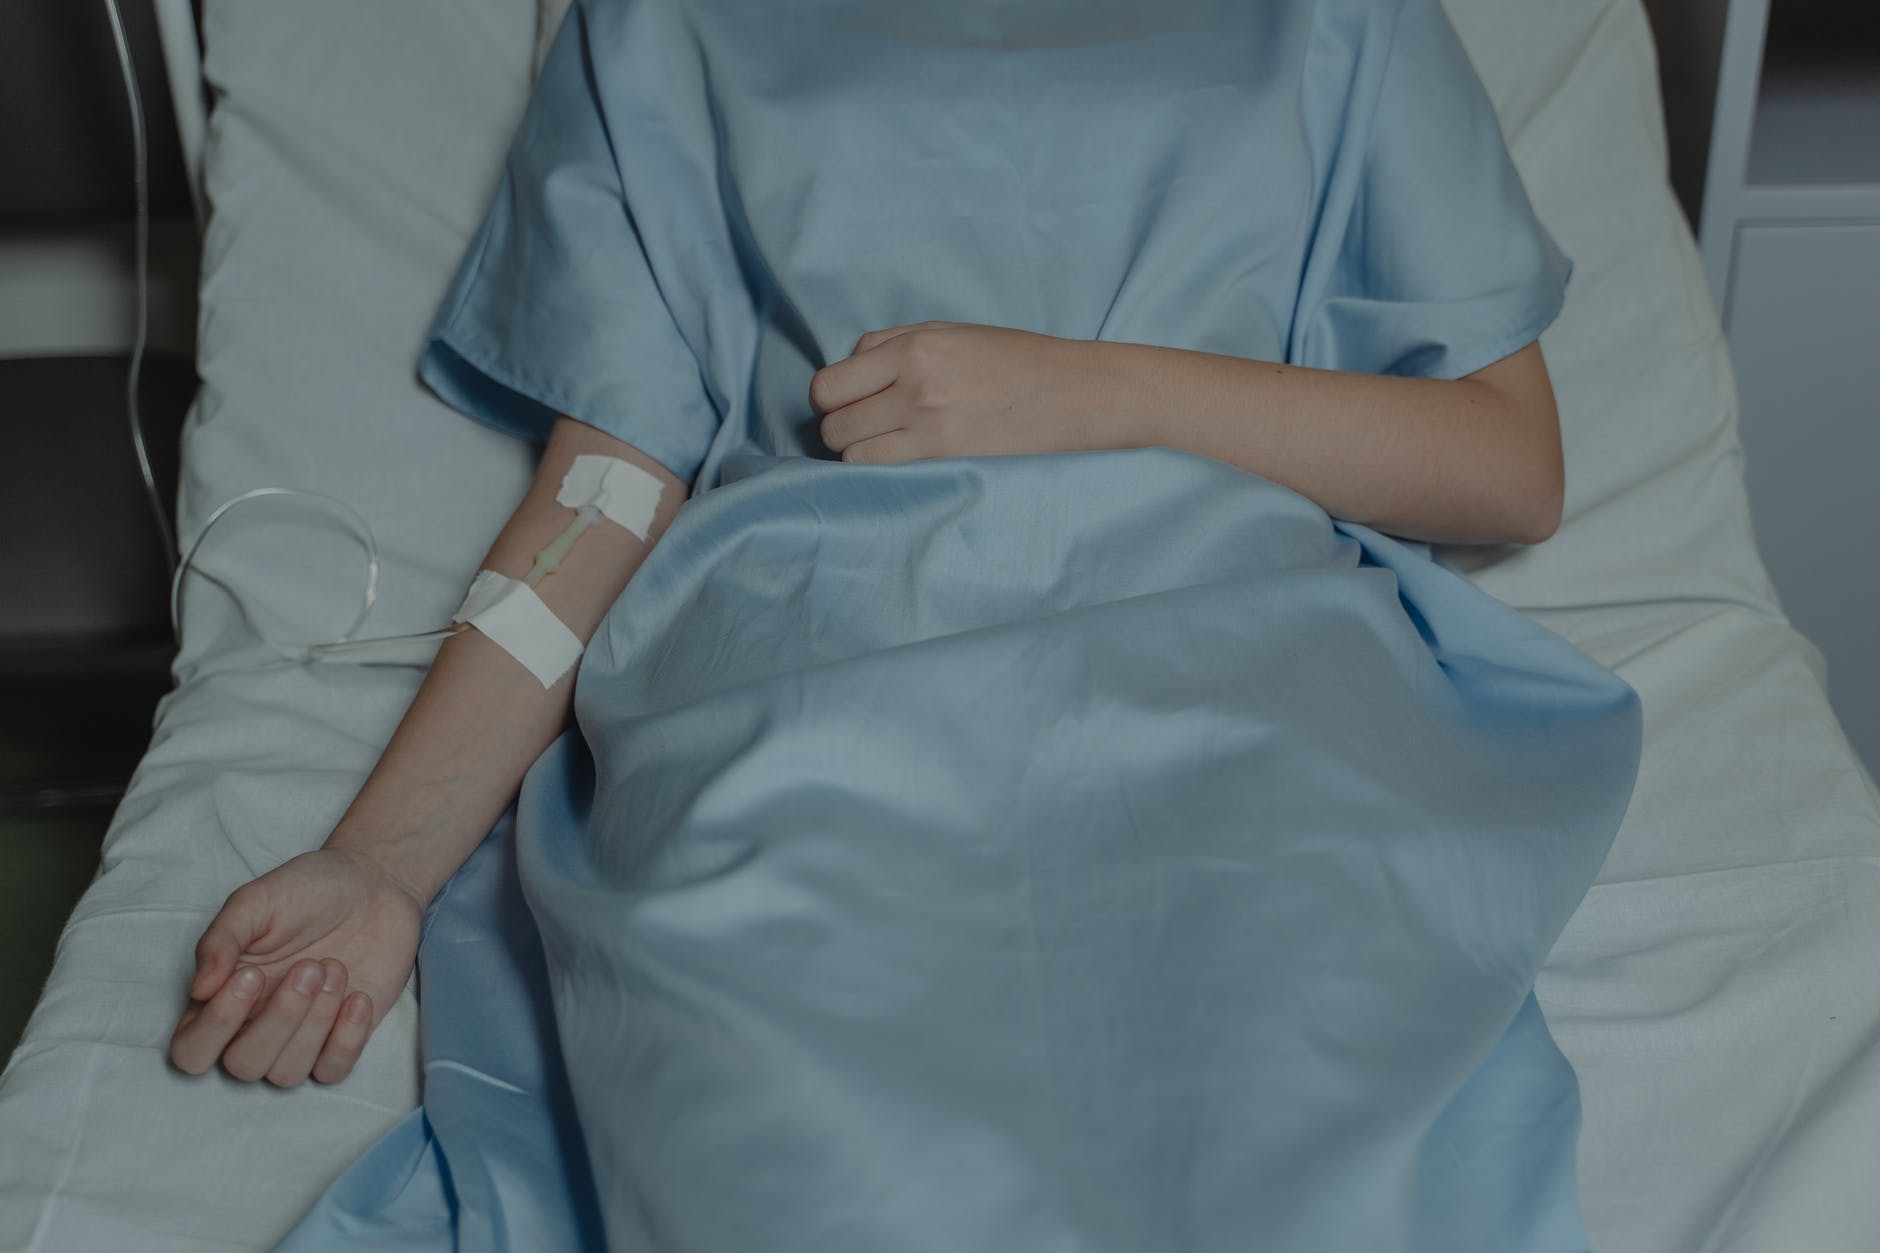 Persona hospitalizada. | Foto: Pexels